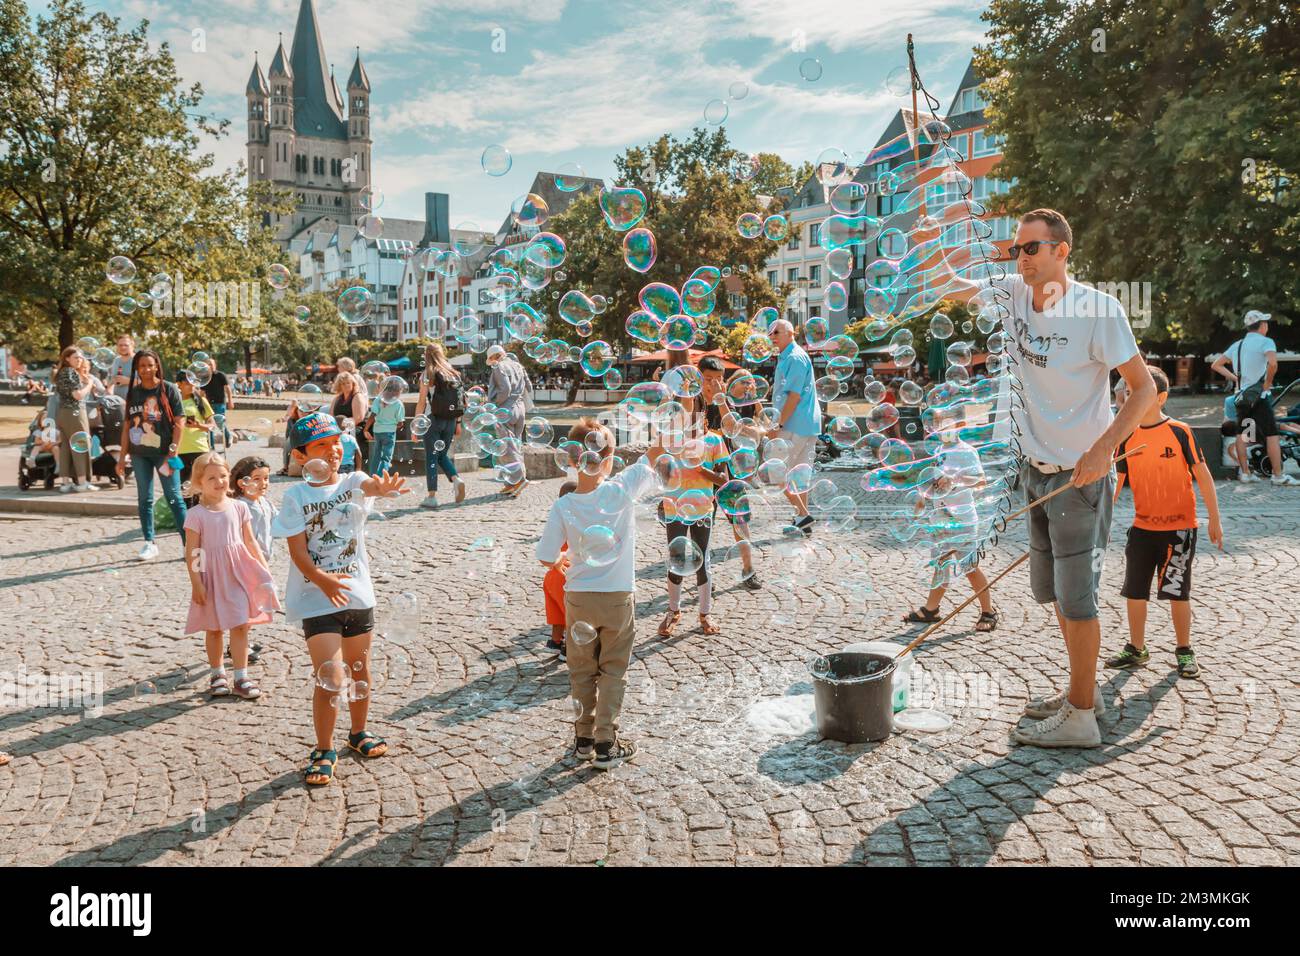 29 juillet 2022, Cologne, Allemagne: Un artiste de rue faisant un spectacle et un spectacle de bulles de savon pour les enfants qui s'amusent Banque D'Images